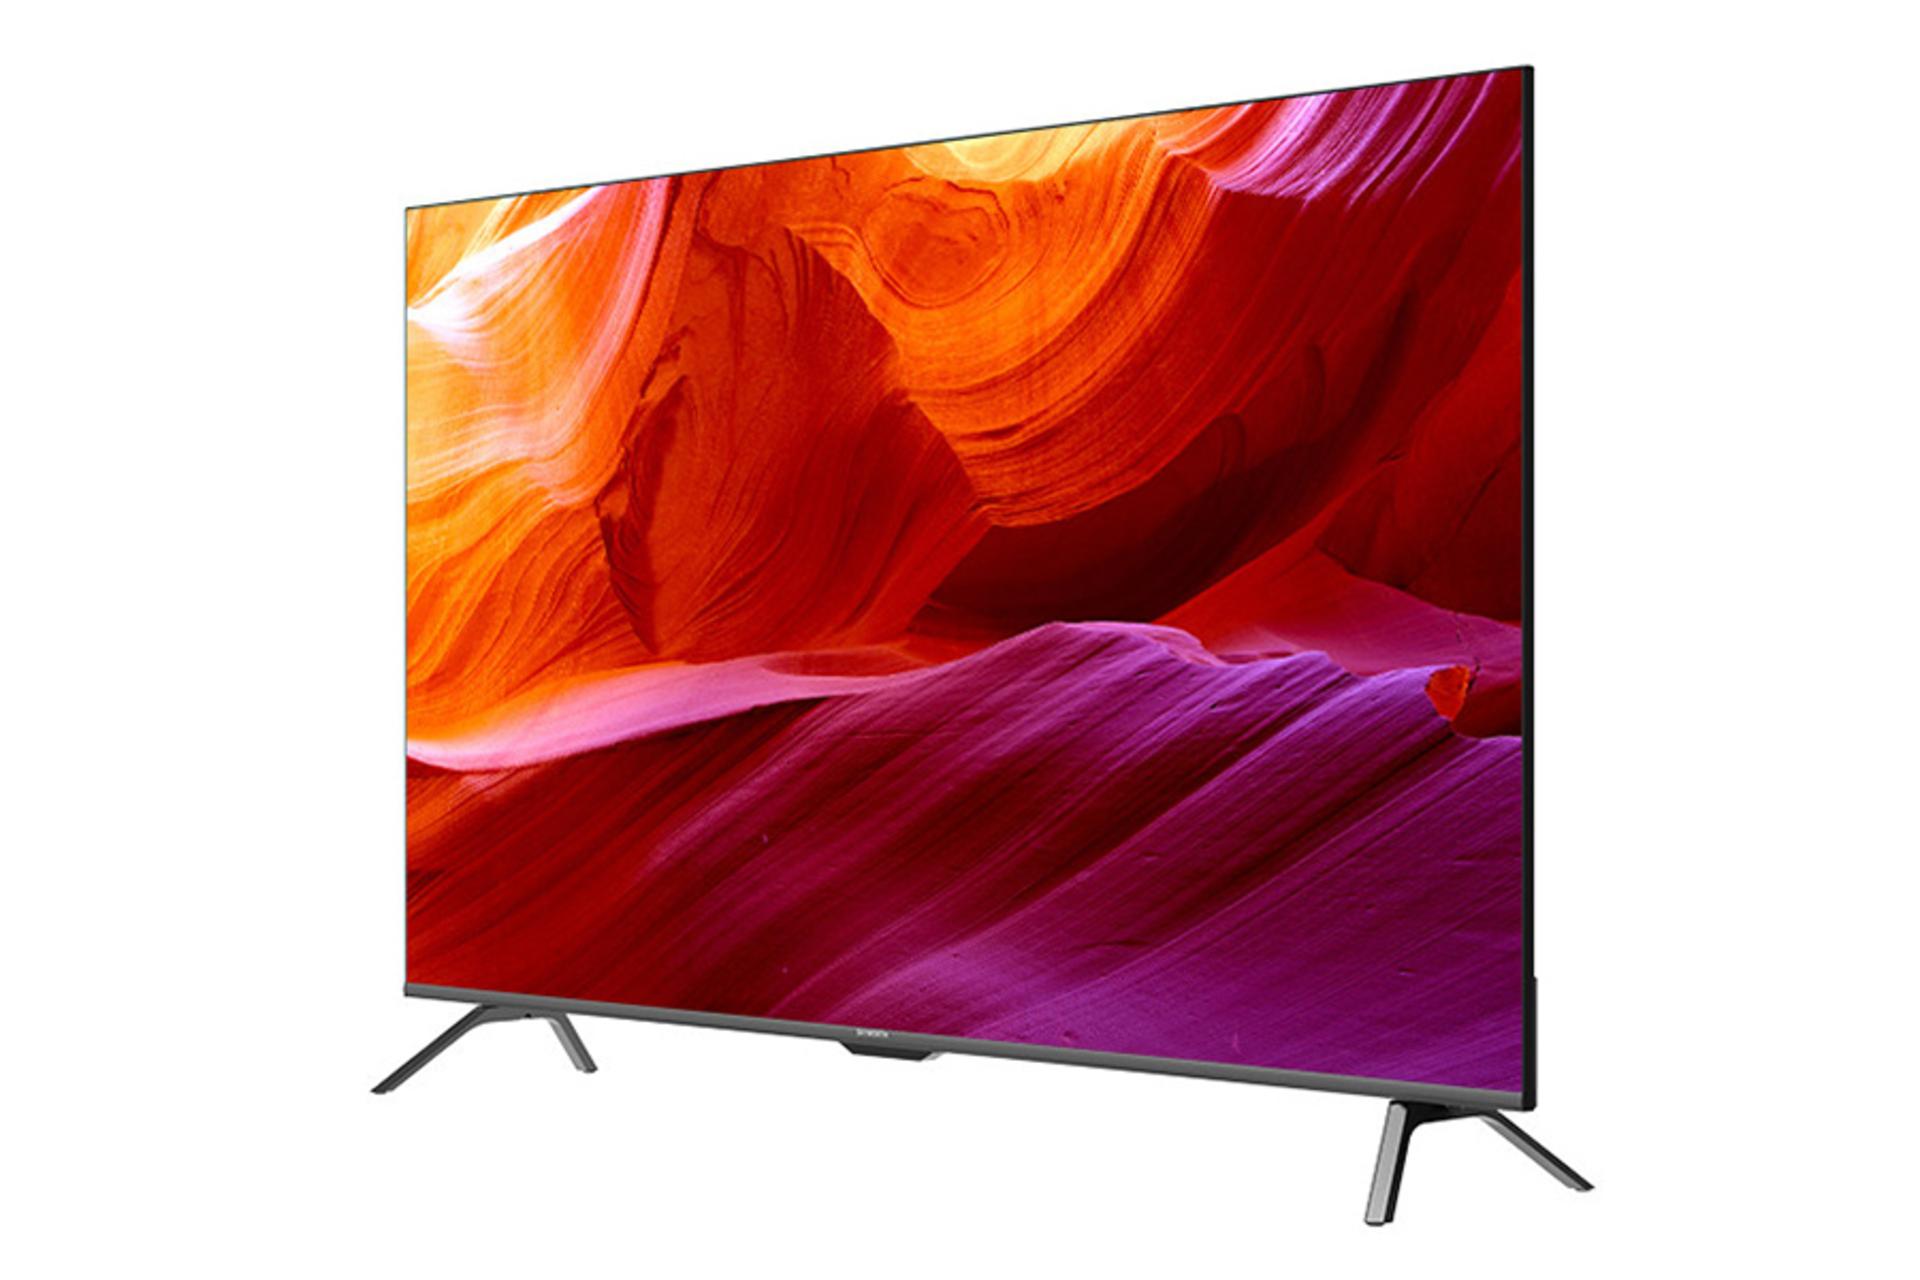 قیمت تلویزیون ایکس ویژن XYU715 مدل 55 اینچ + مشخصات